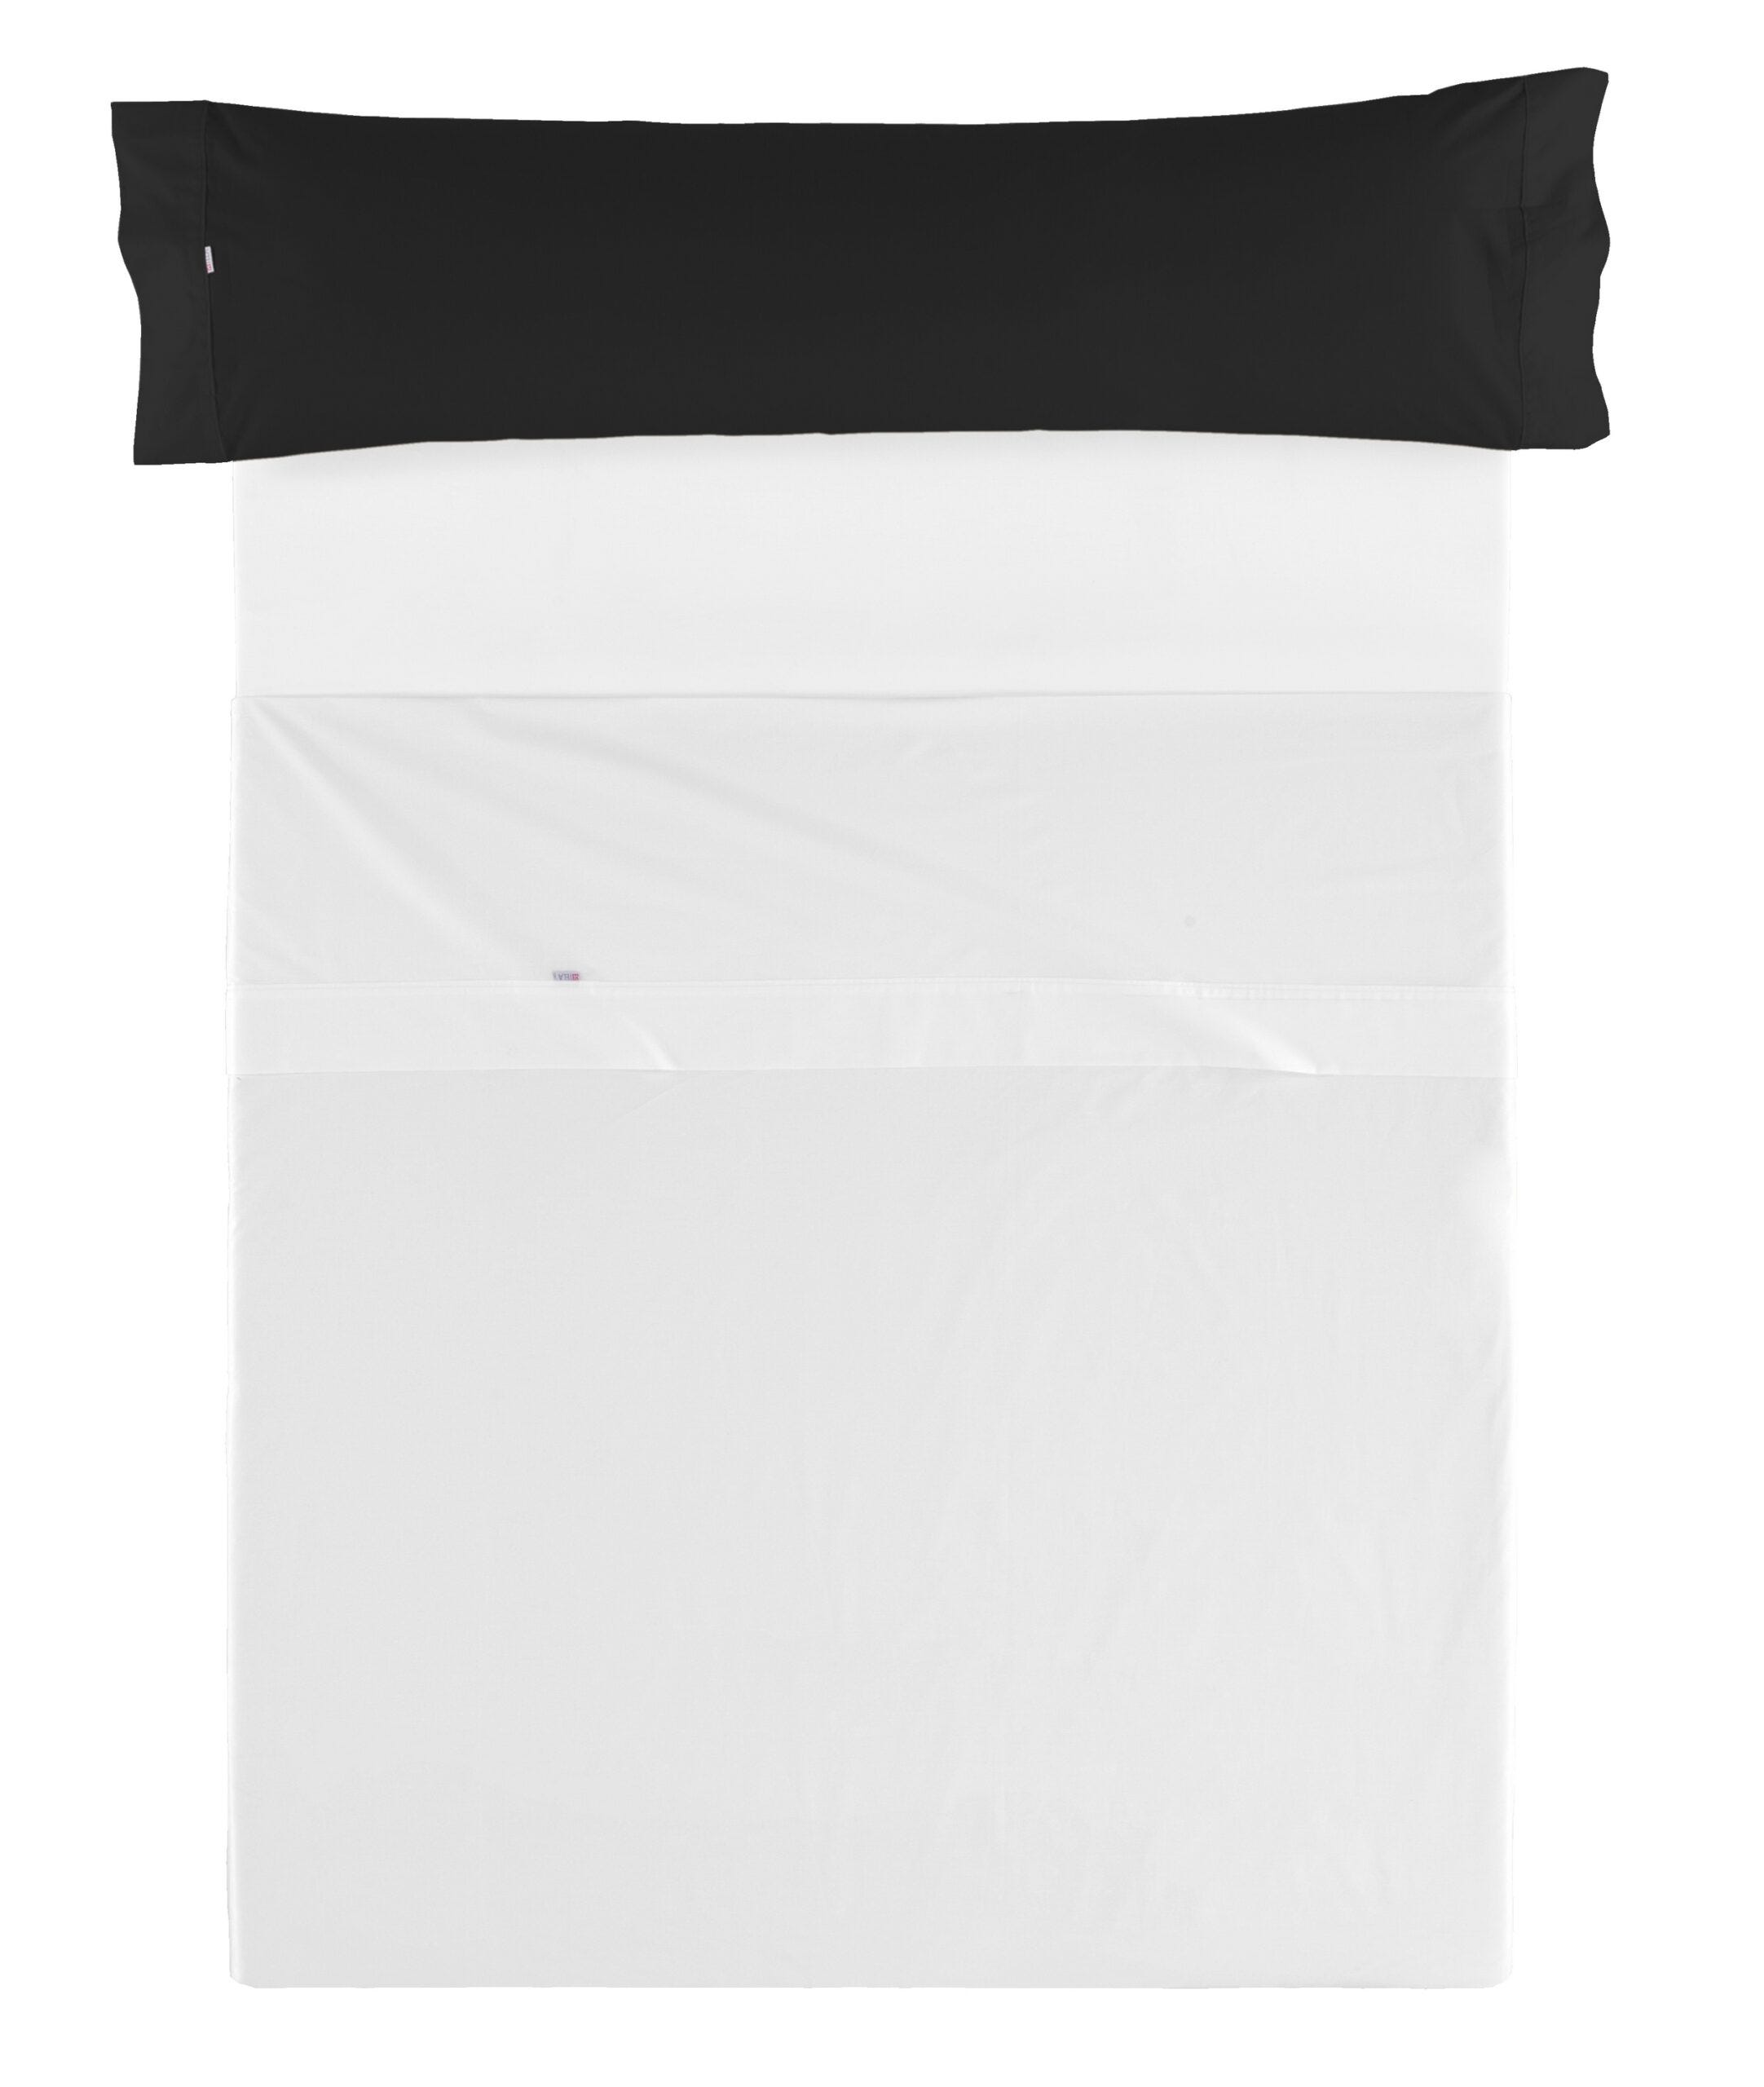 Pack de 2 Fundas de Almohada Polialgodón Color Negro 45 x 90 cm